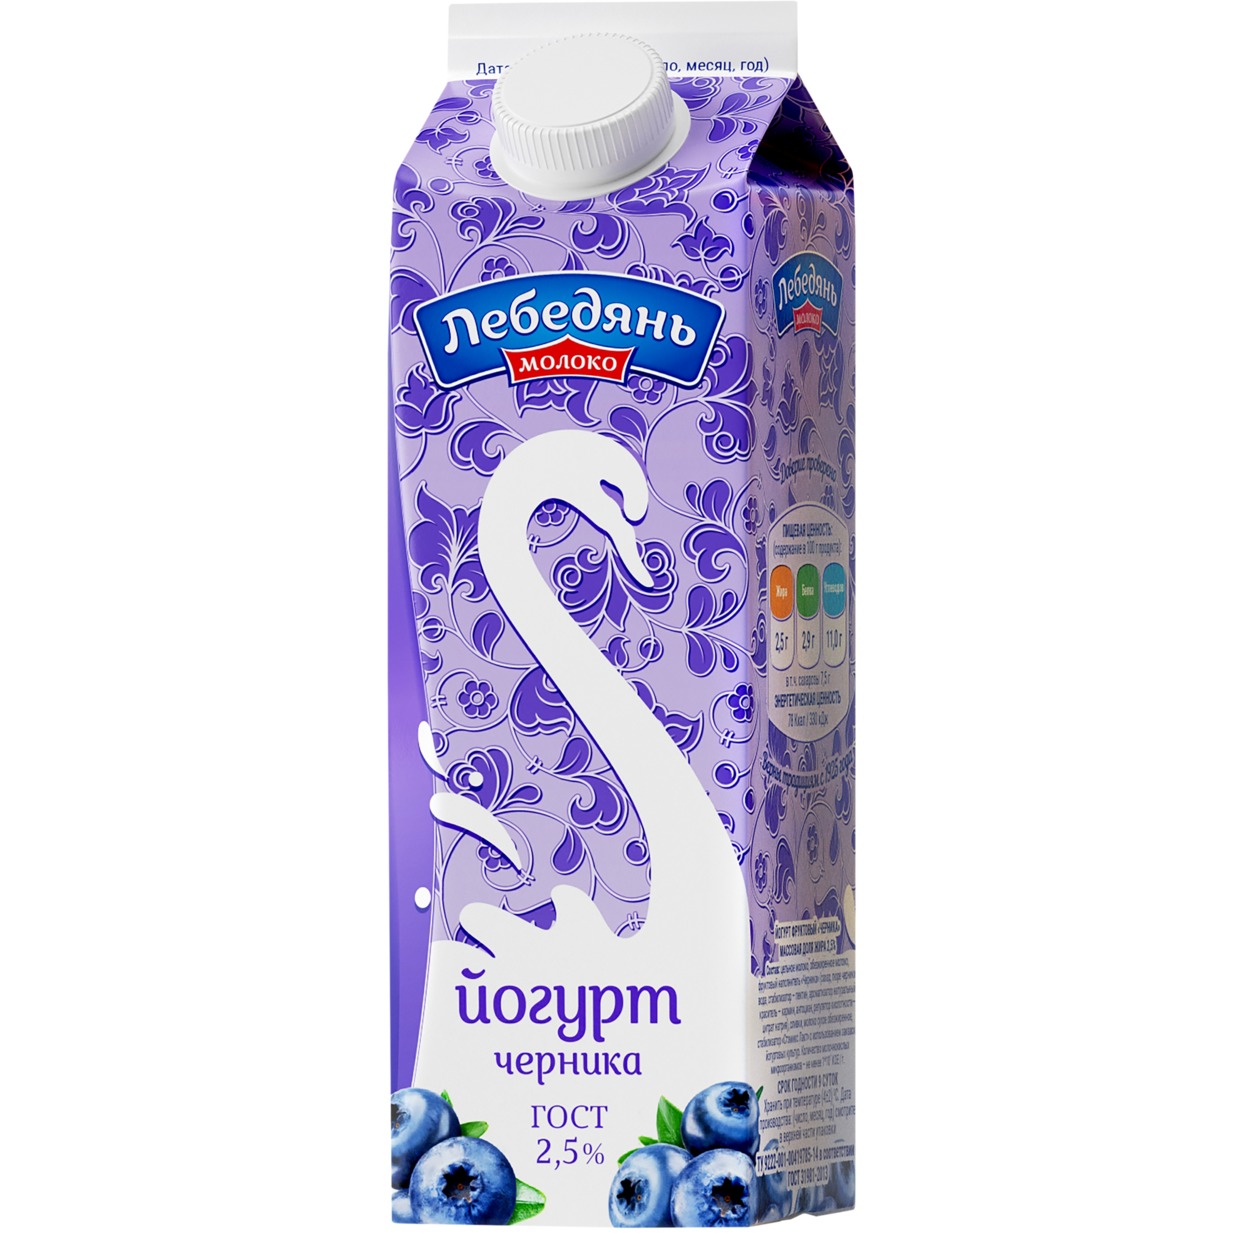 Йогурт ЧЕРНИКА фруктовый 2,5% п/пак 450г Лебедяньмолоко